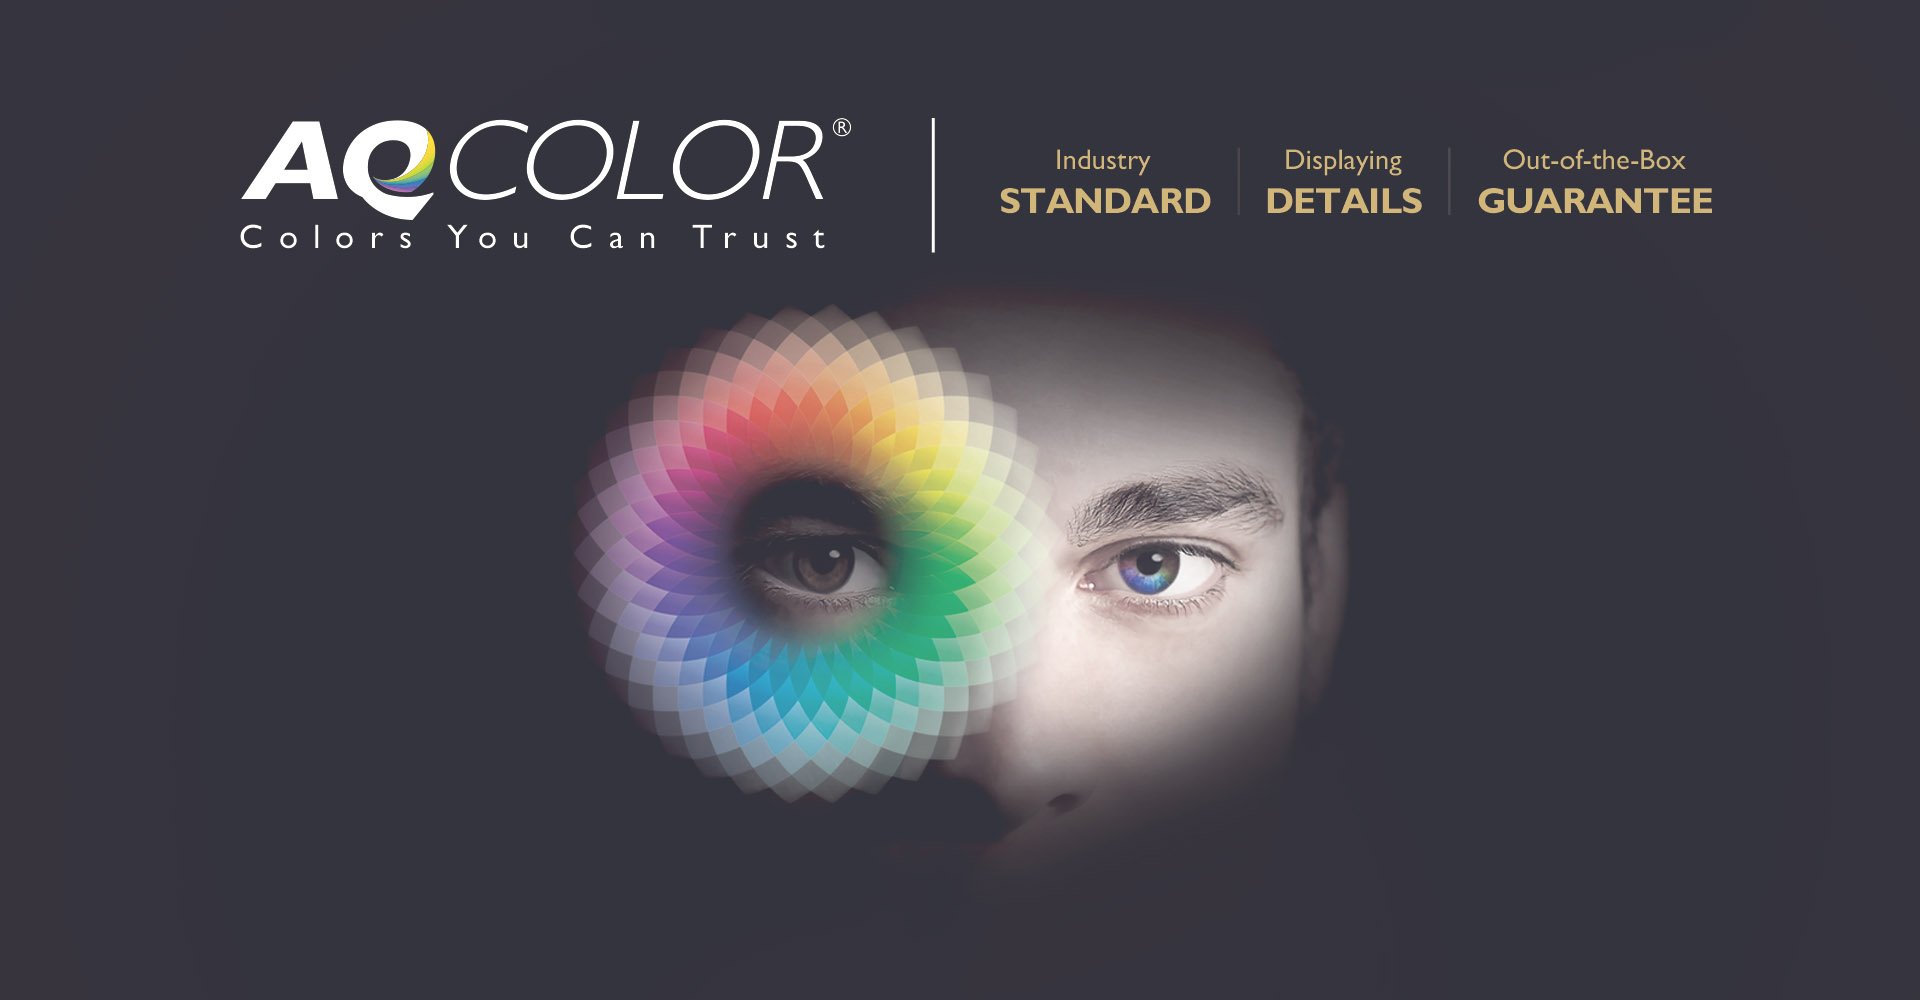 BenQ AQCOLOR-Technologie schafft neue Dimensionen in der Foto- und Videobearbeitung und maximale Farbpräzision für lebensechte Farben.